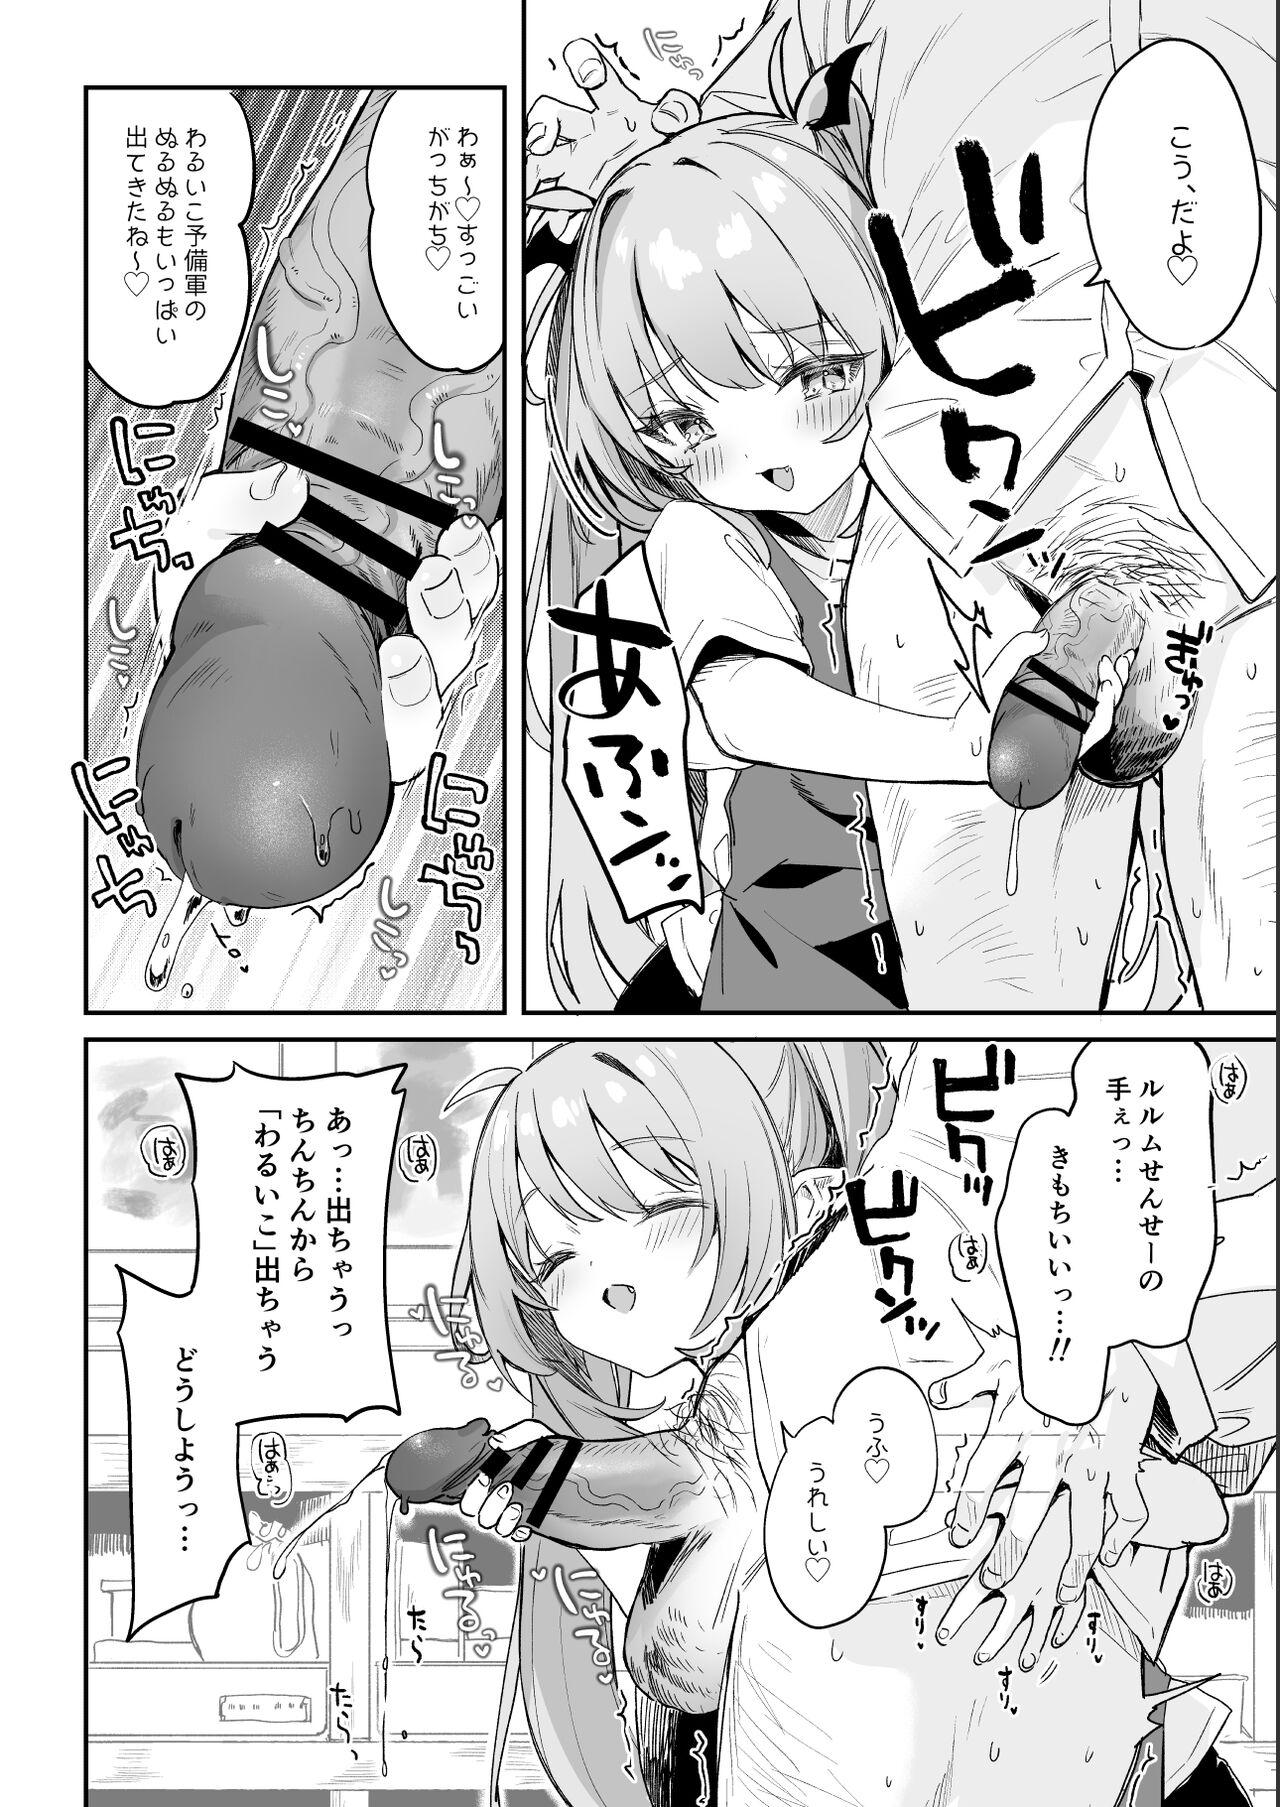 Flashing [Tamano Kedama] Kodomo no Hi (Imishin) ni Mukete Manga o Kaku - Original Transex - Page 8